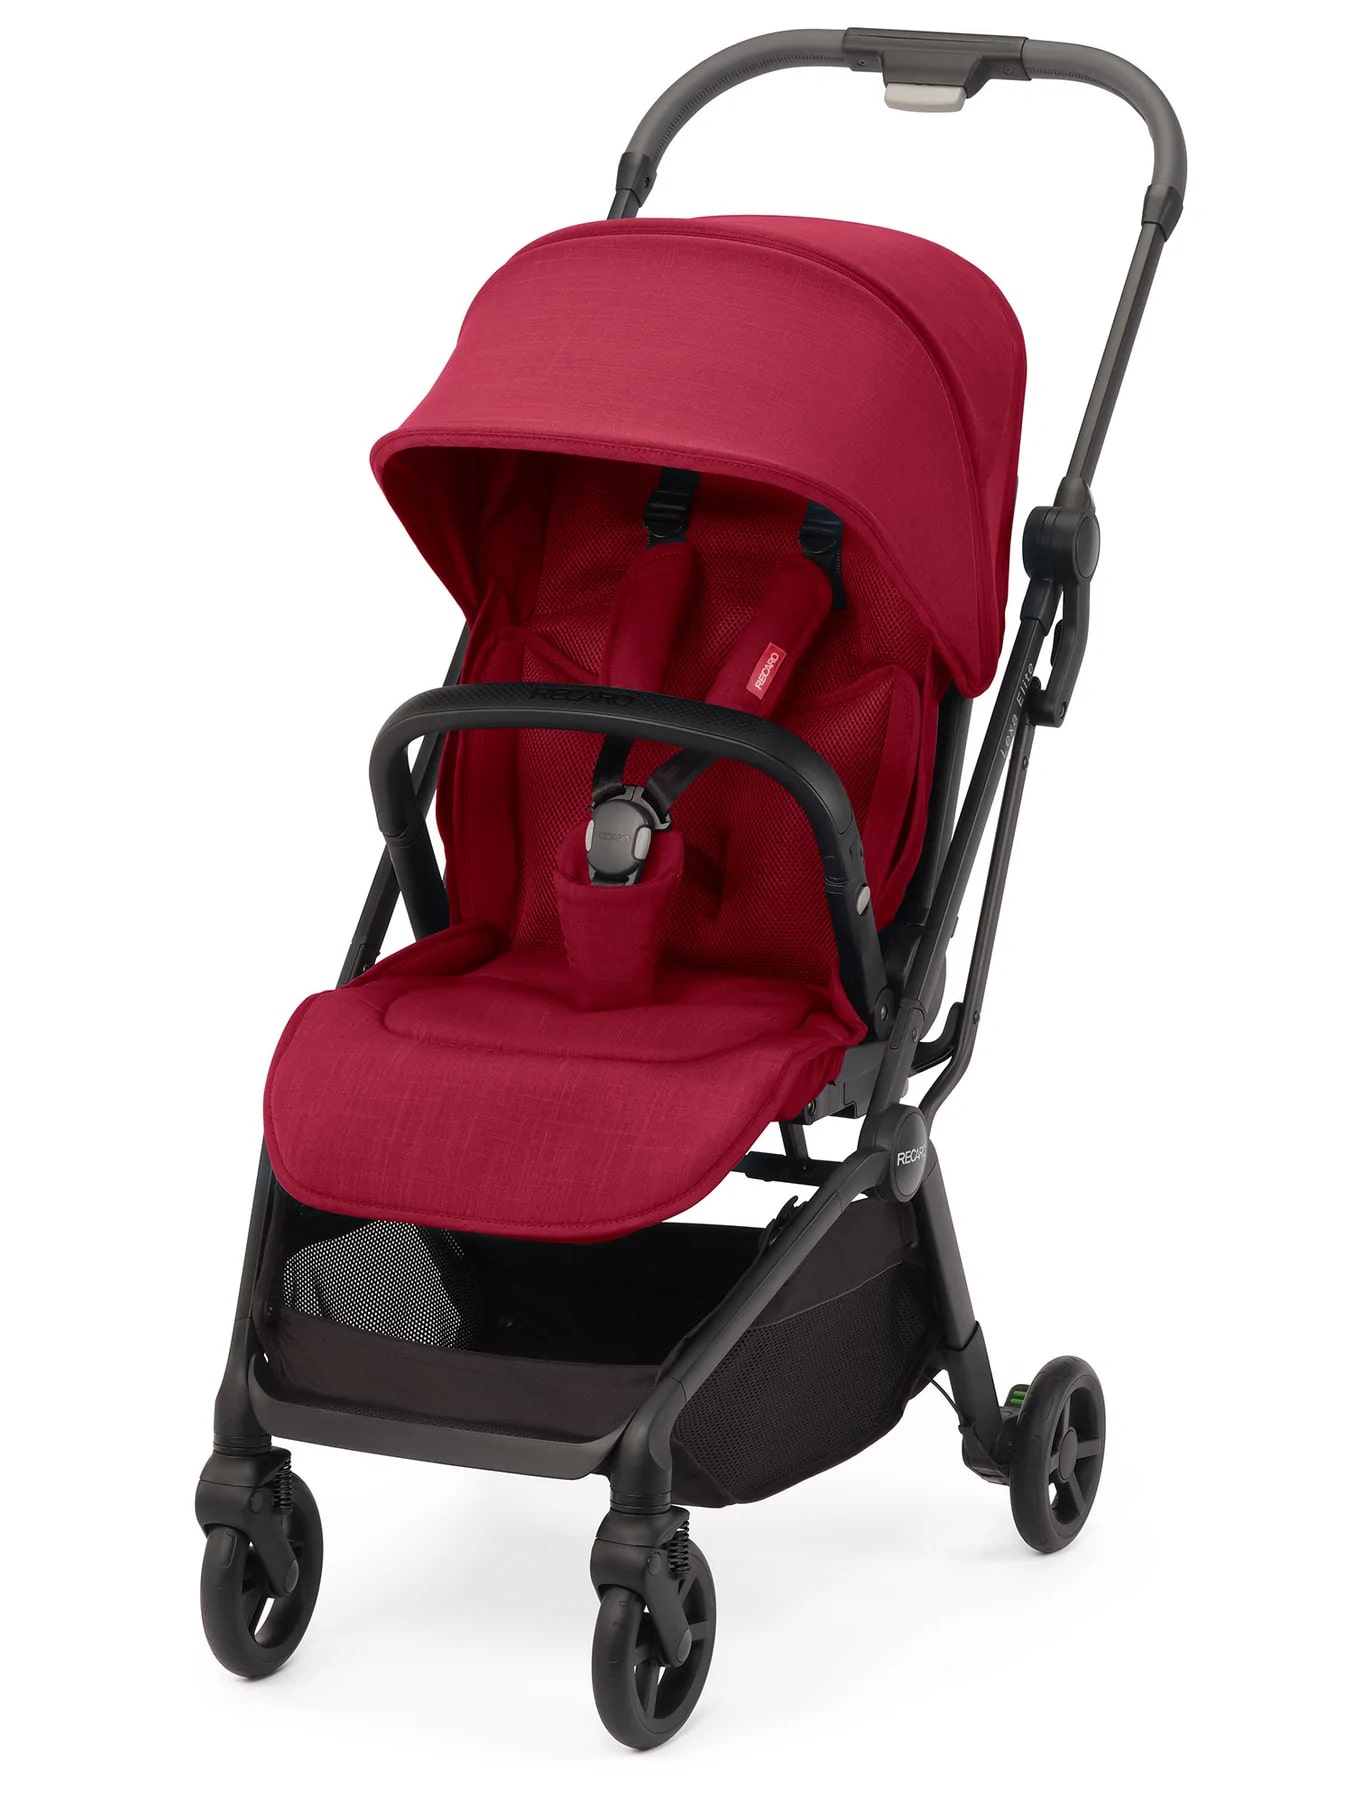 Recaro Stroller Lexa Elite - Select Garnet Red